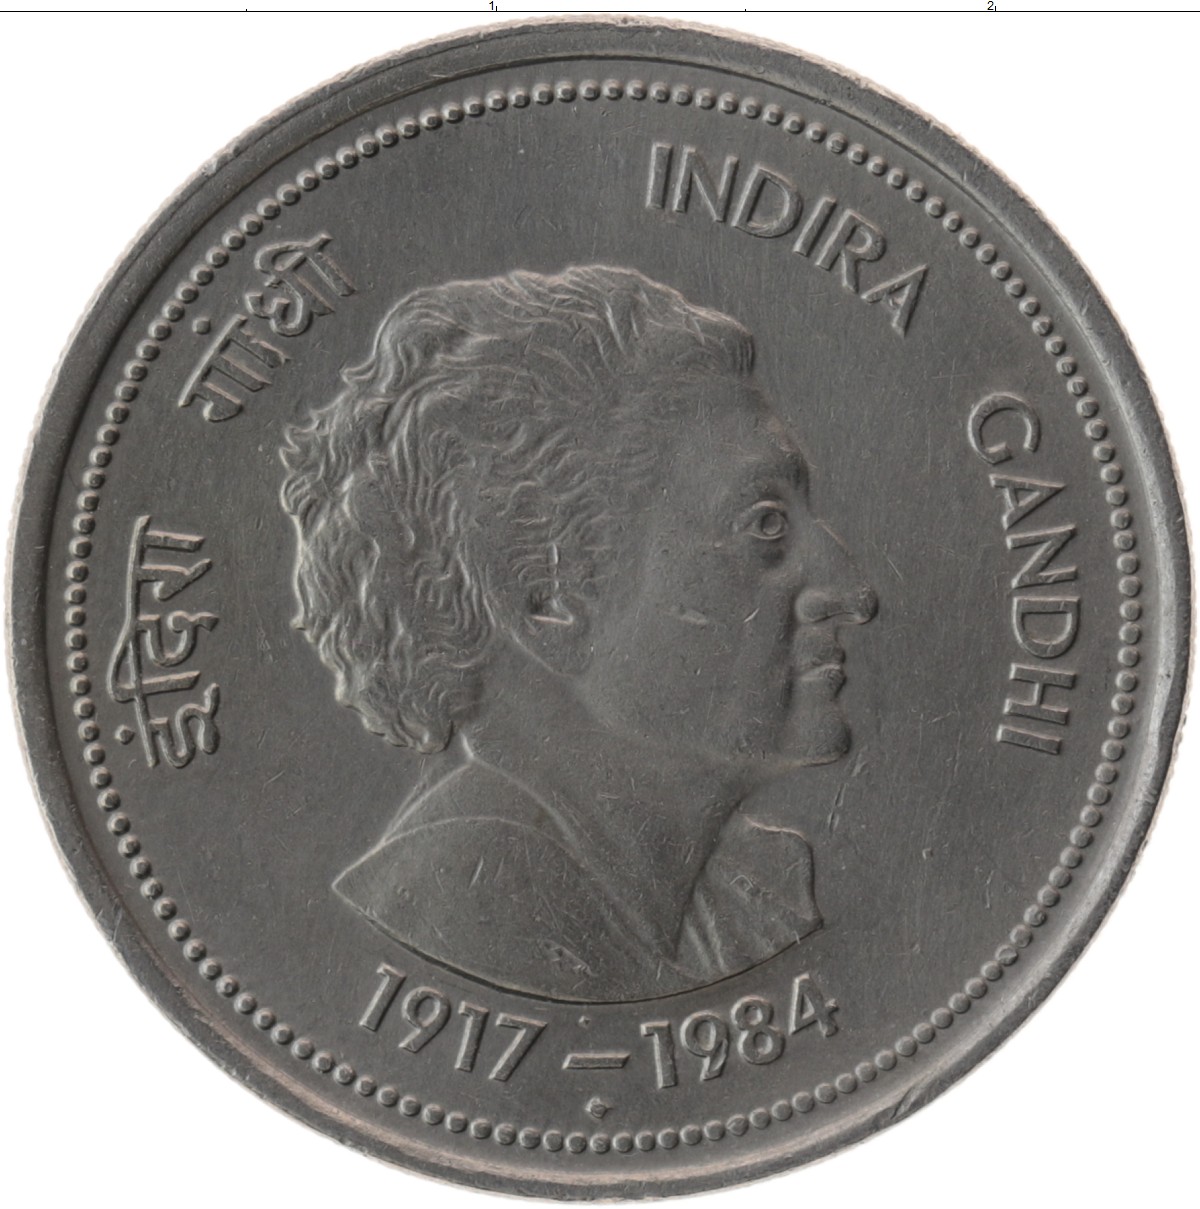 Монеты 1984 года стоимость. Монета 1984. Монета 1984 медная. Монеты 1984 года. Индийская монета 1984 года цена.